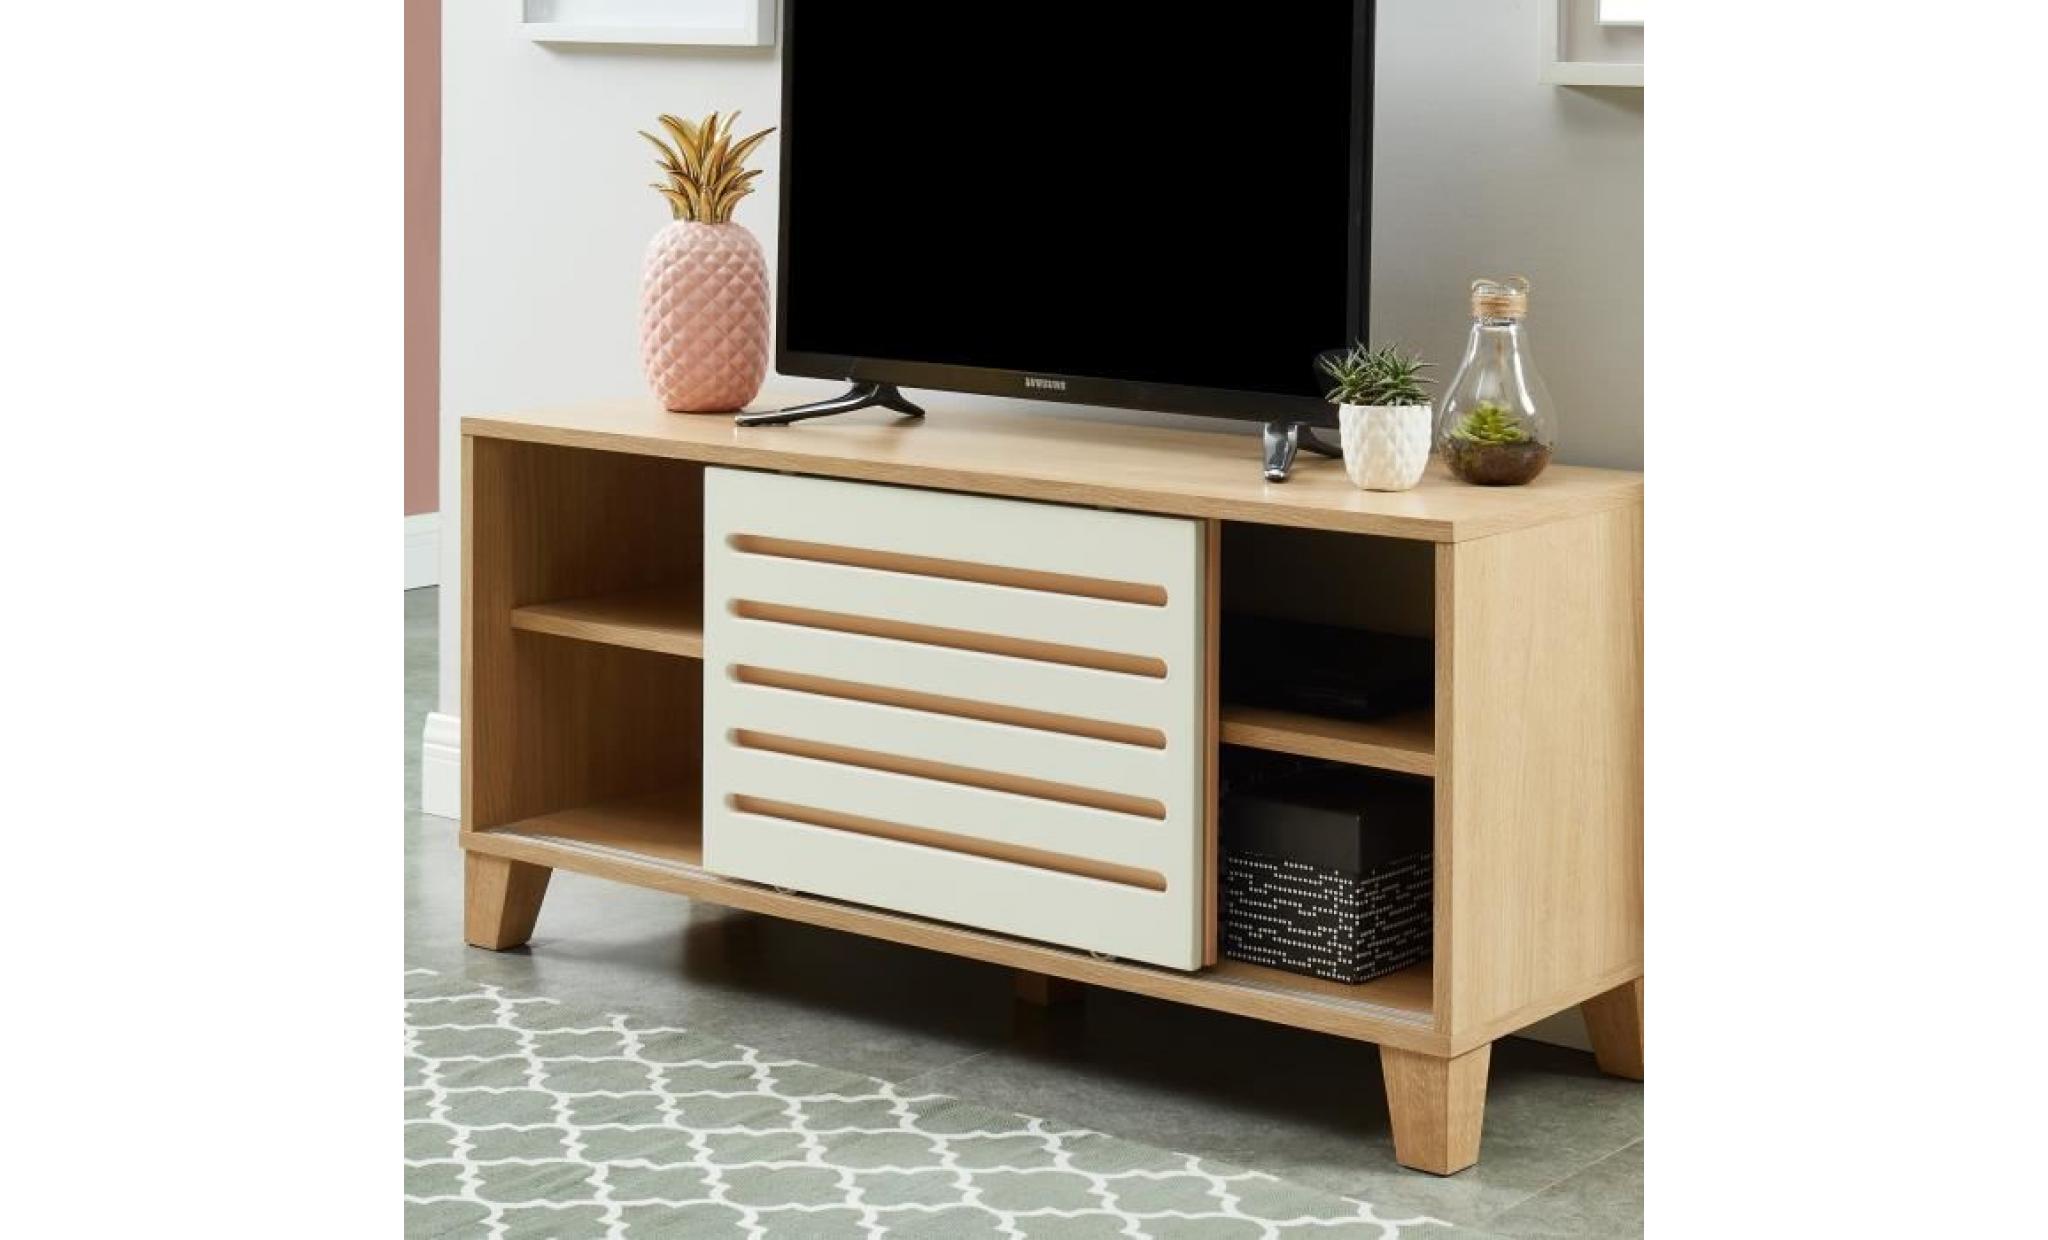 openwork meuble tv scandinave décor chêne, blanc et rose   l 120 cm pas cher